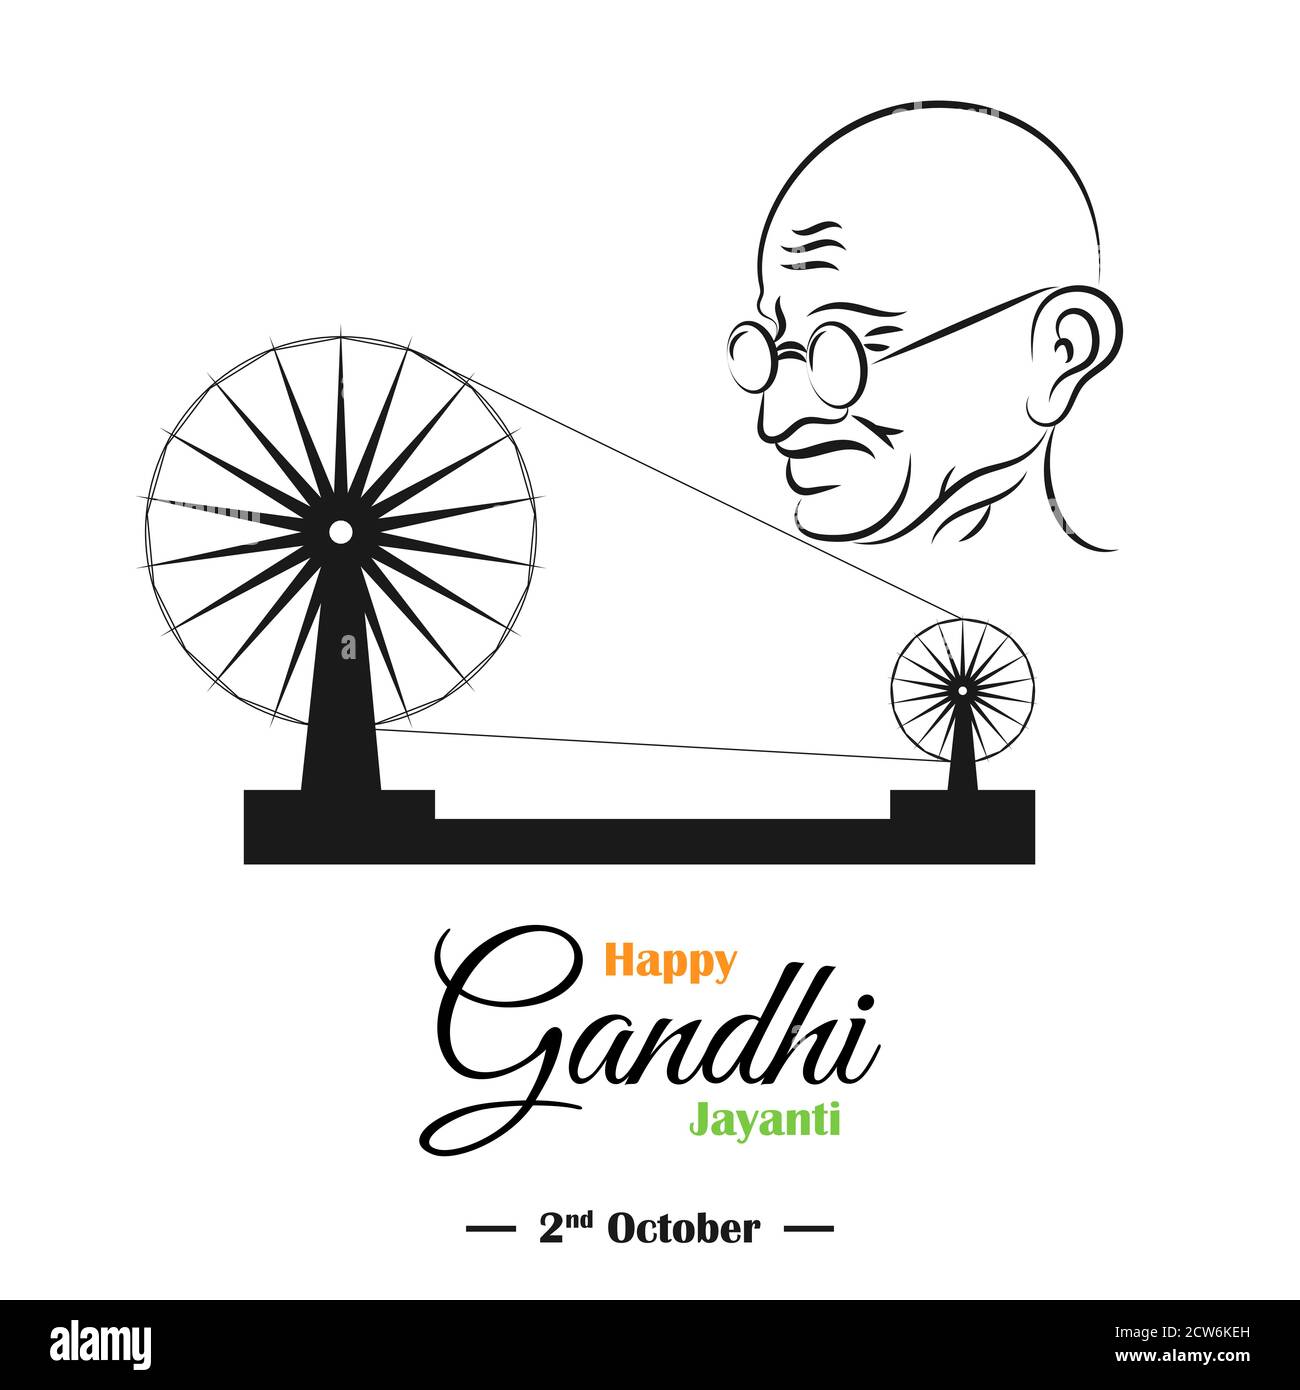 Happy Gandhi Jayanti, 2nd October, Mahatma Gandhi sketch with ...